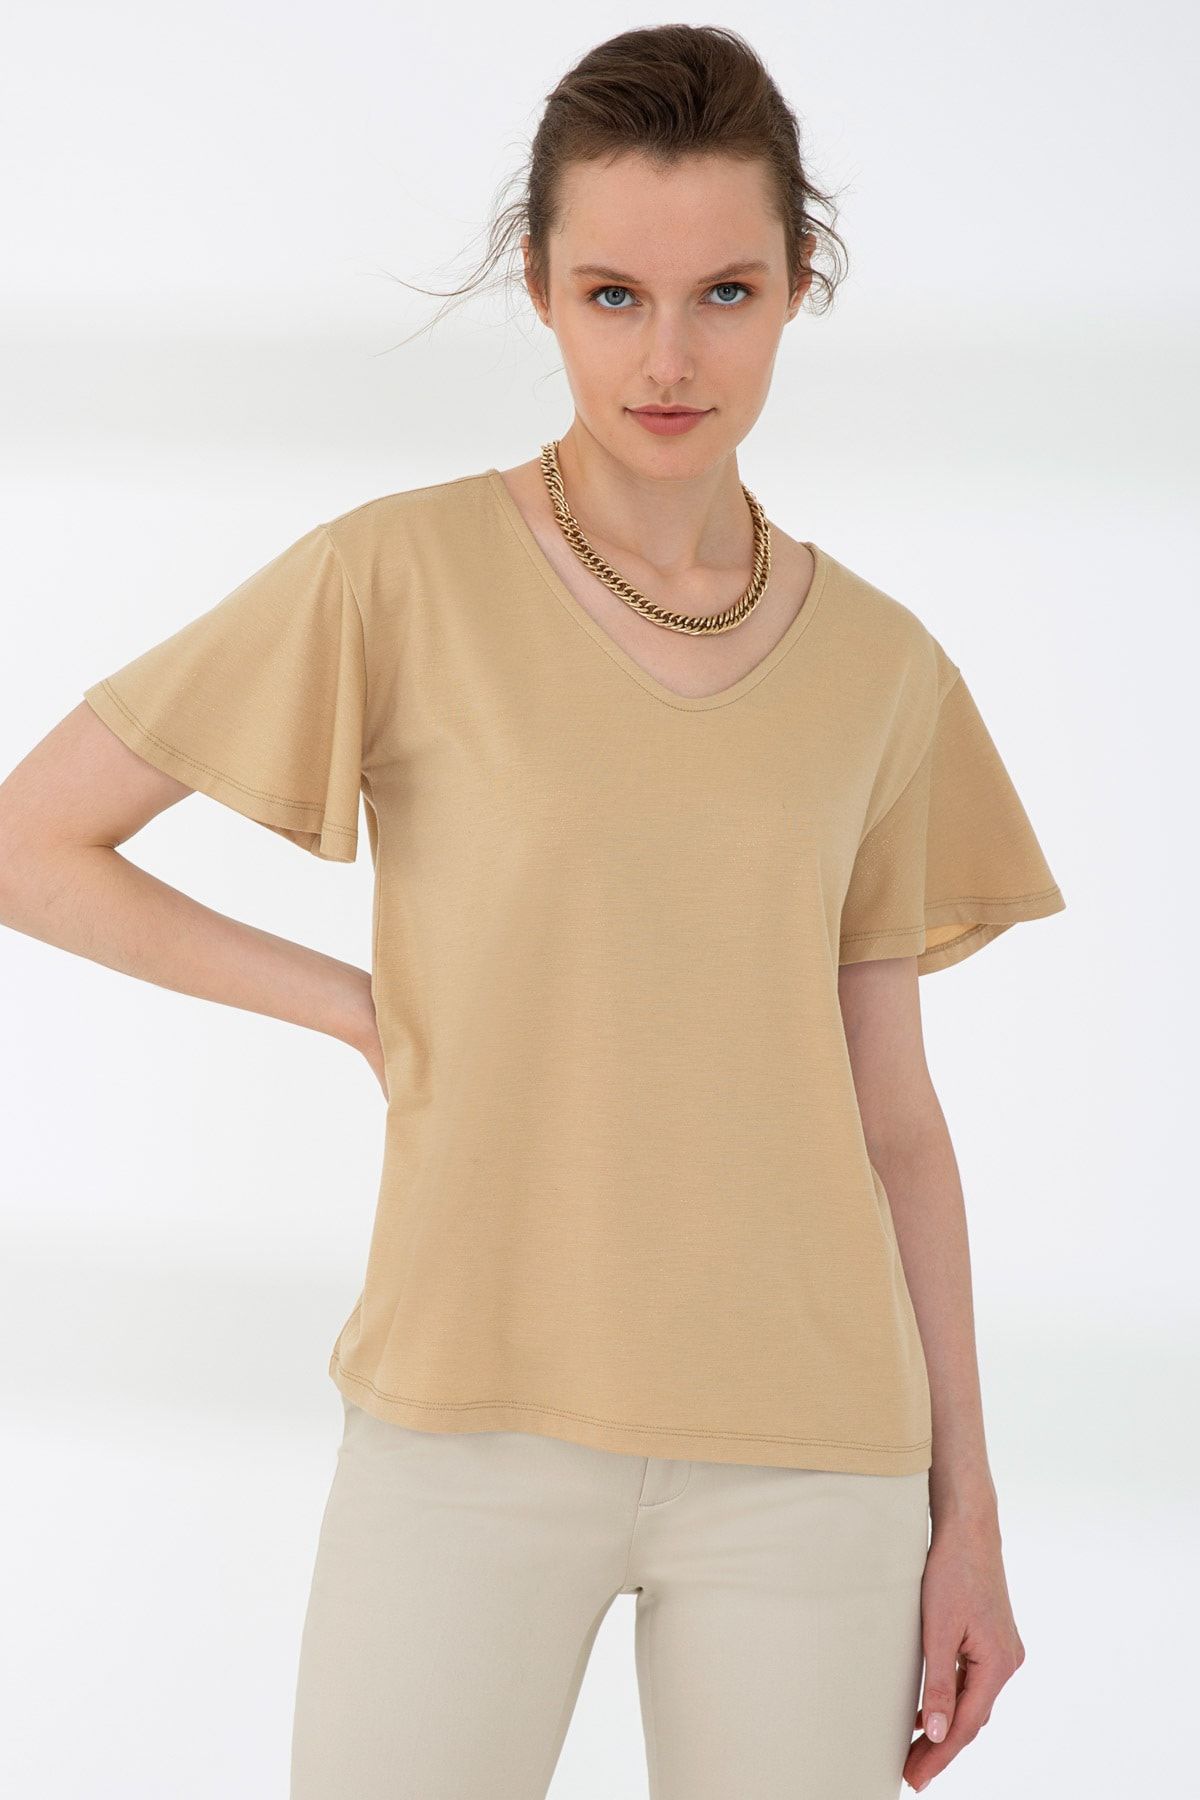 Pierre Cardin Acık Kahverengı Kadın T-Shirt G022SZ011.000.761886